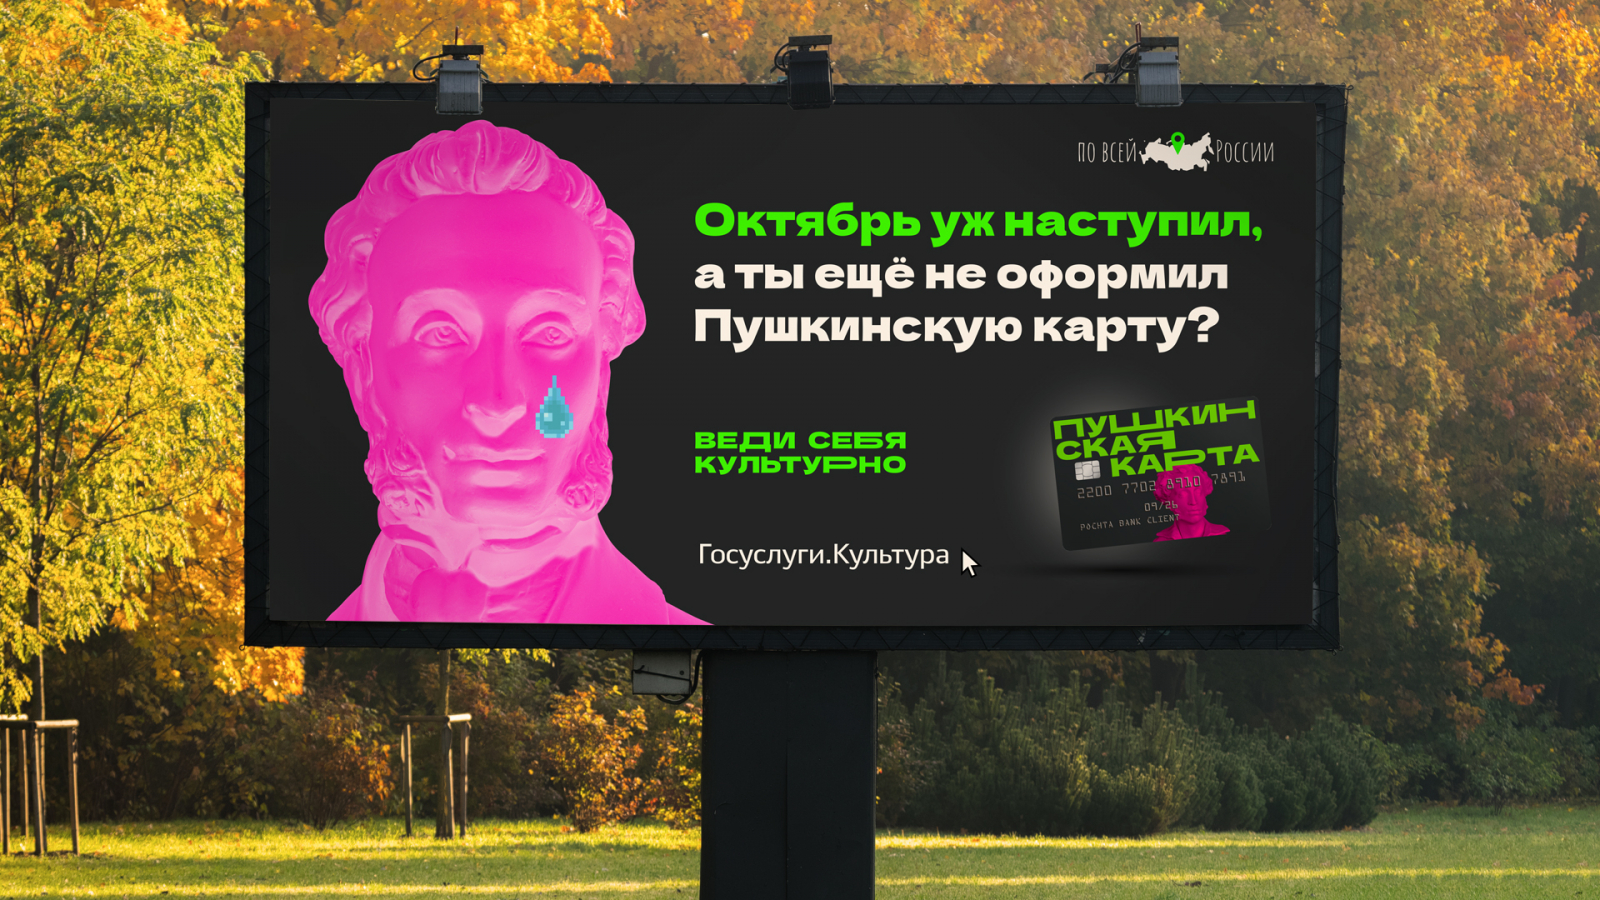 Рекламная кампания, Пушкинская карта, Национальные приоритеты, Культура, Дизайн карточки, Брендинг